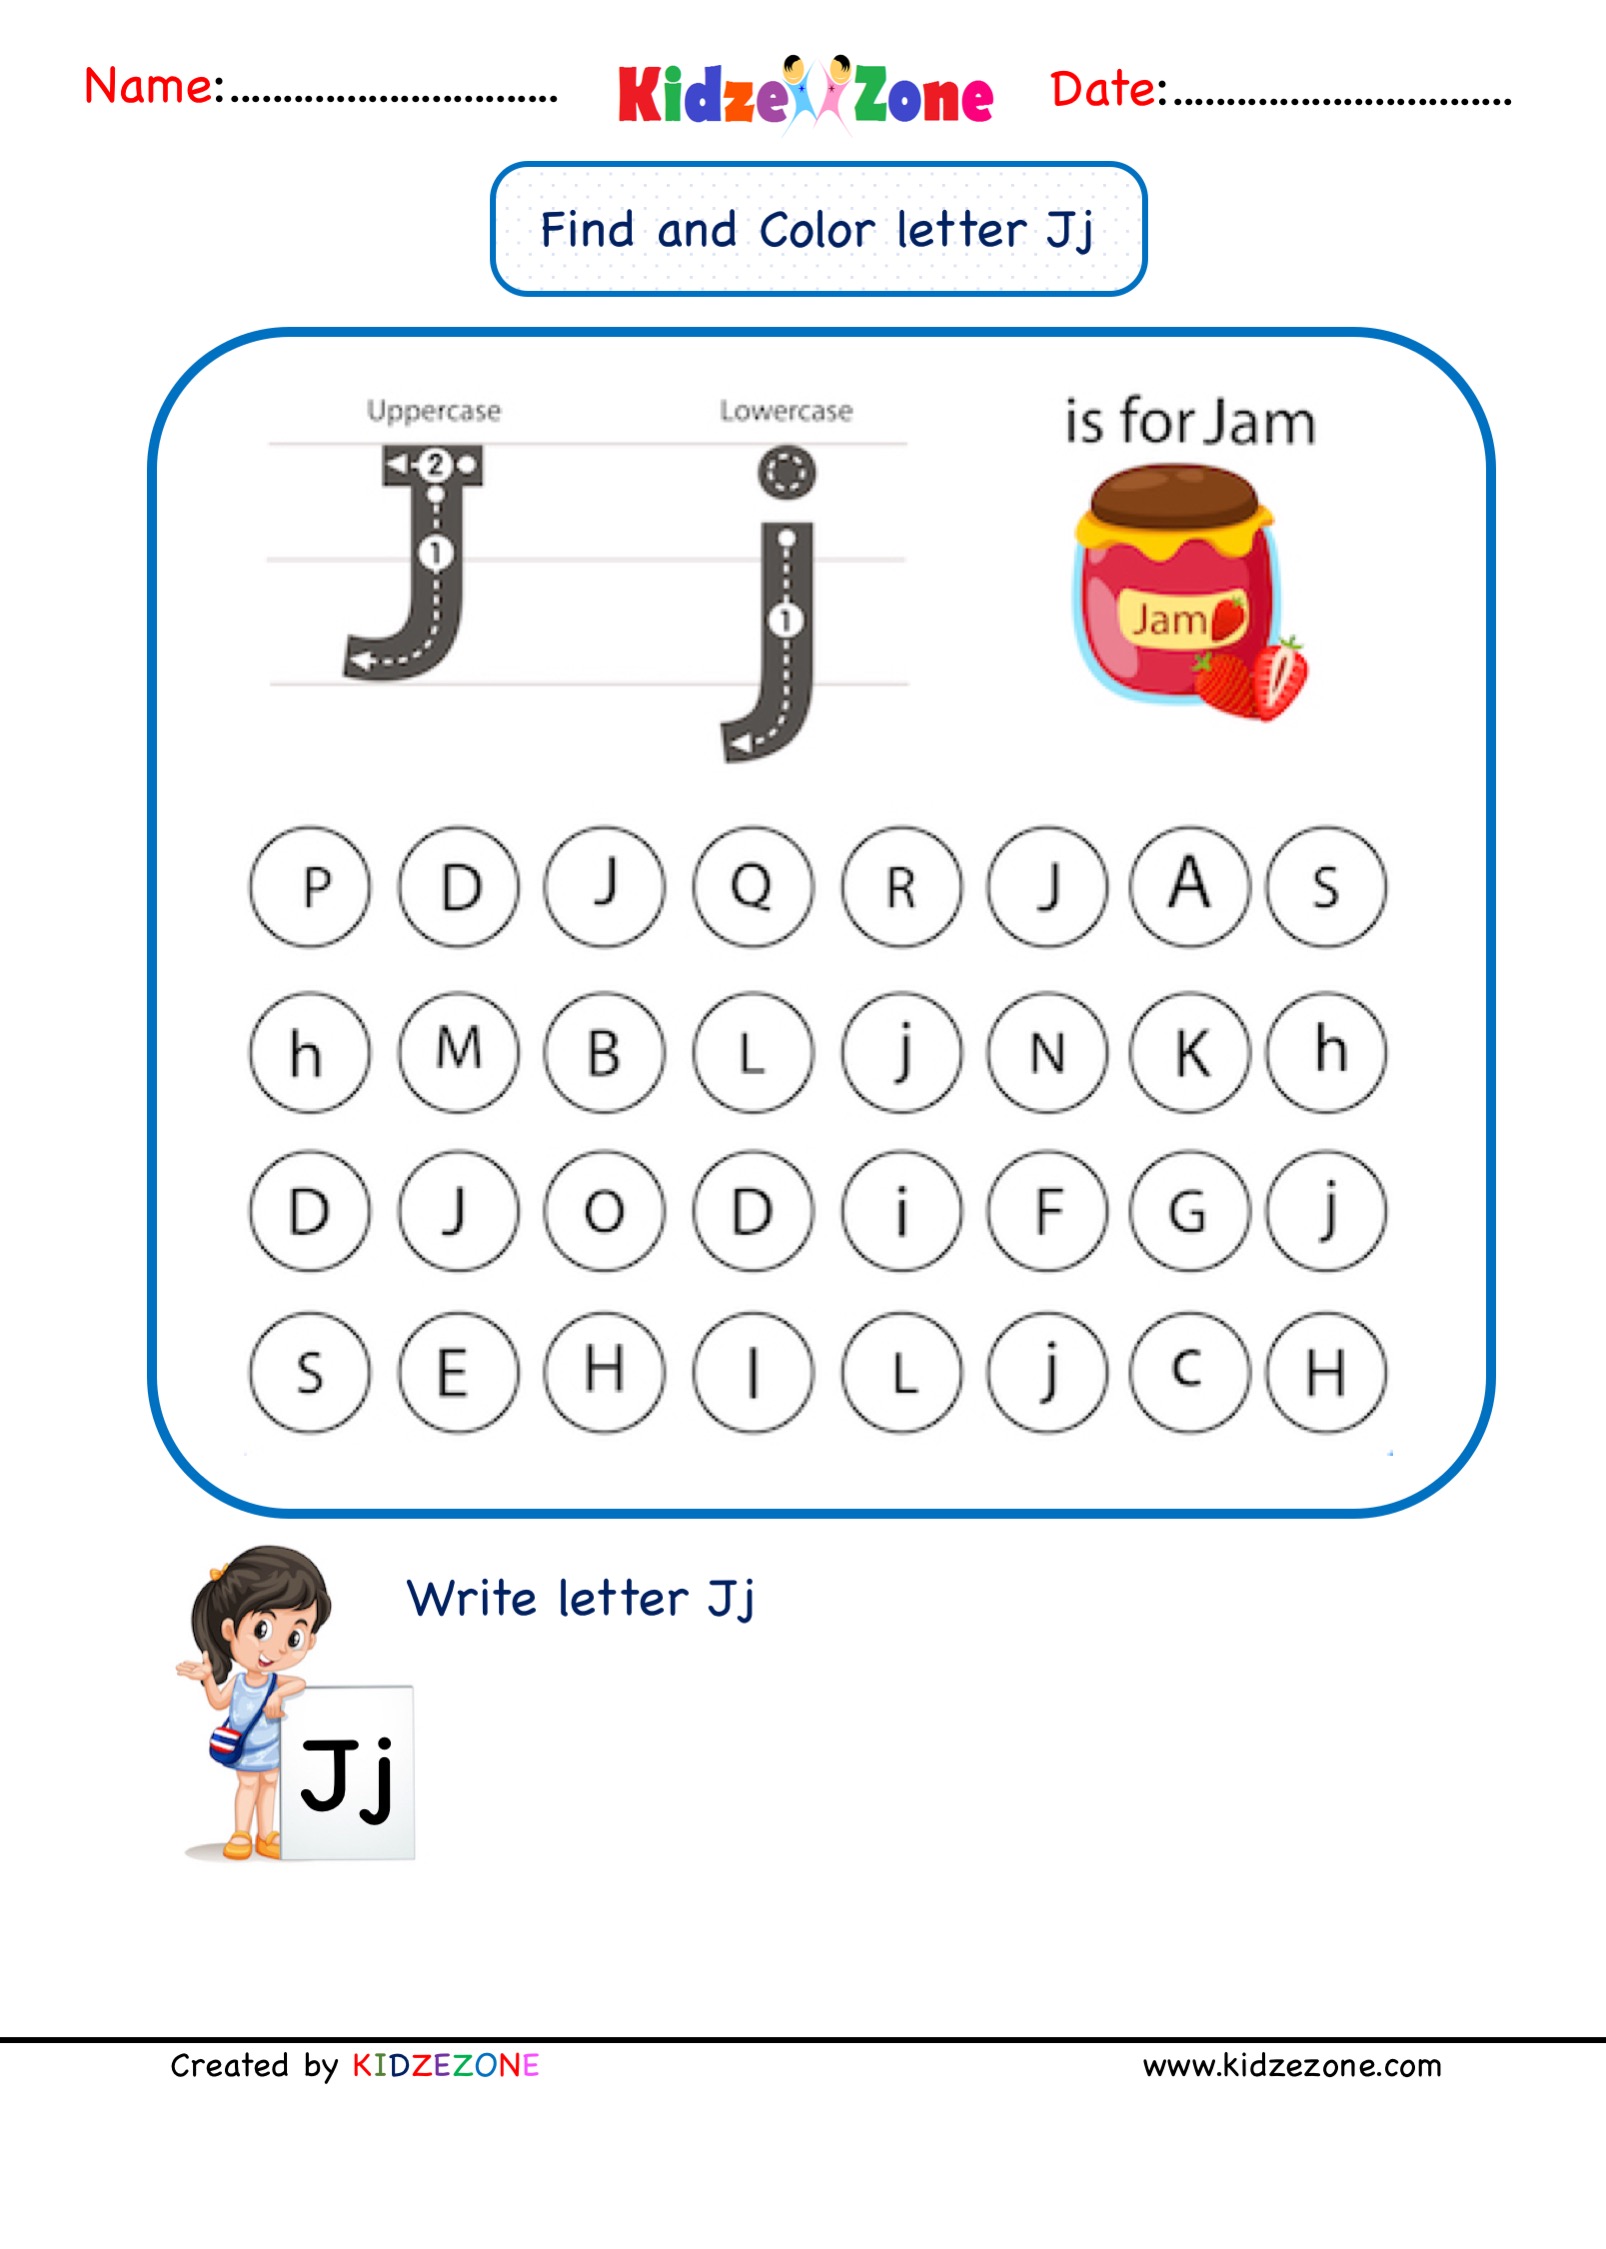 kindergarten-letter-j-worksheets-find-and-color-kidzezone